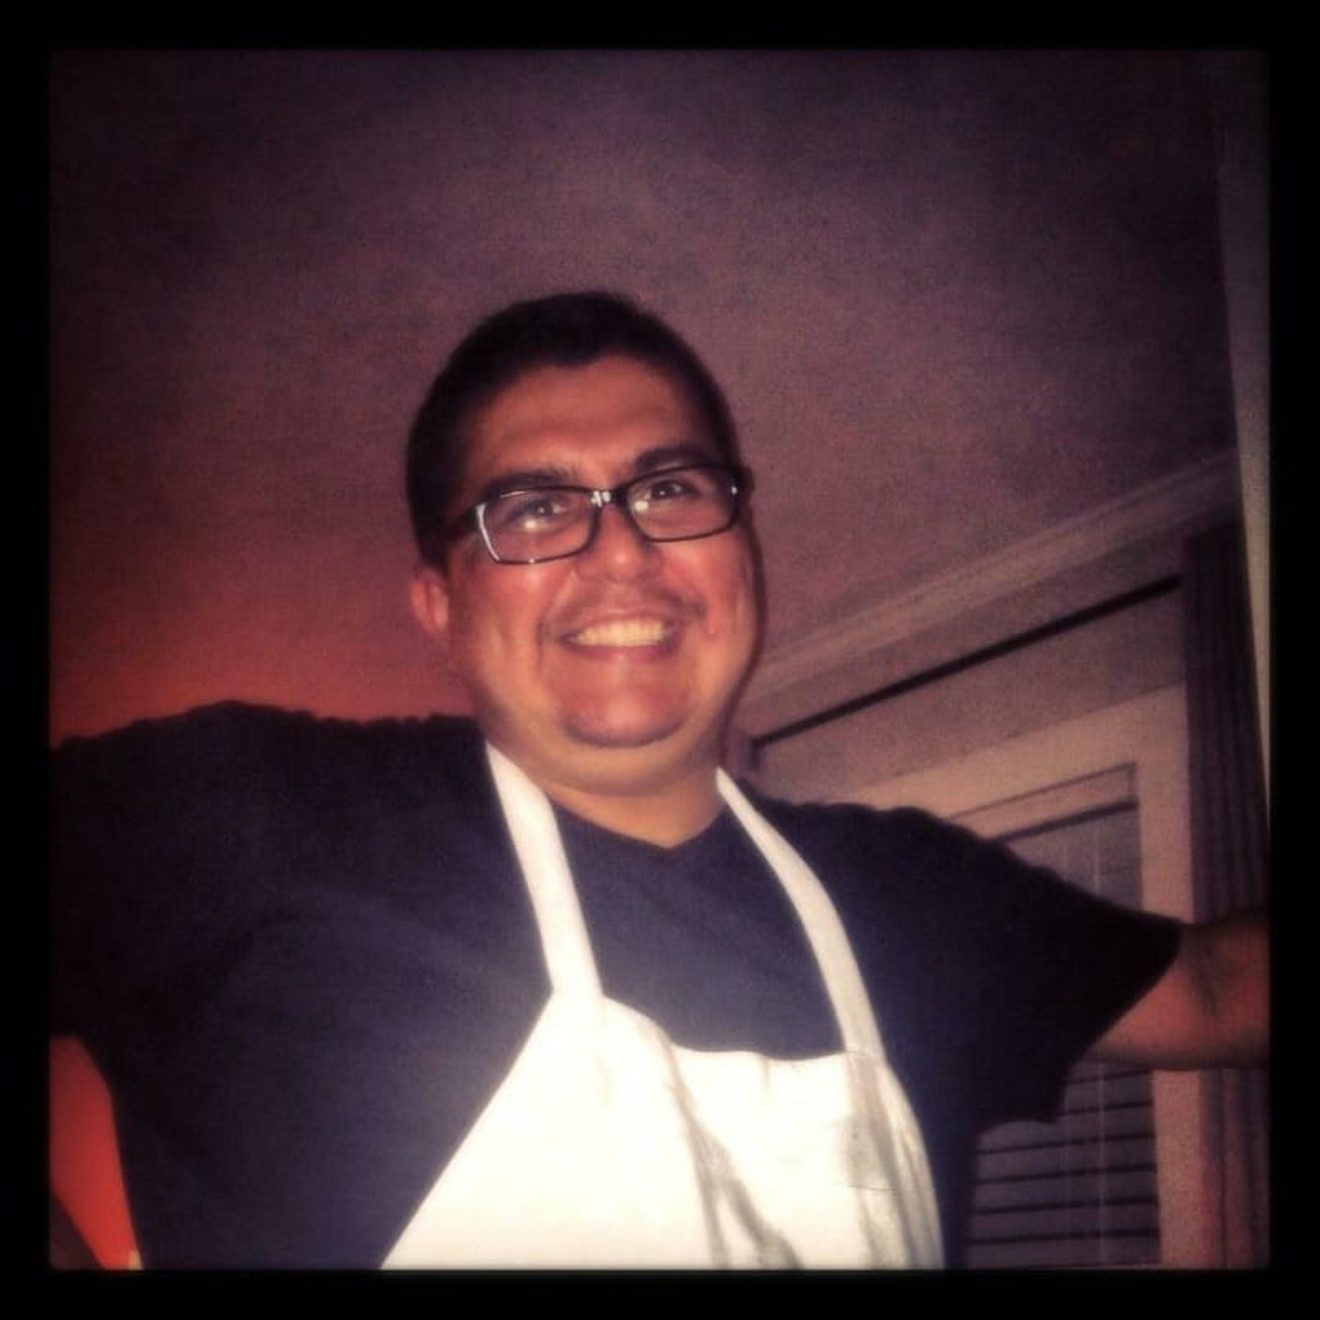 Chef Estevan Galindo died unexpectedly Dec. 6 at age 41.